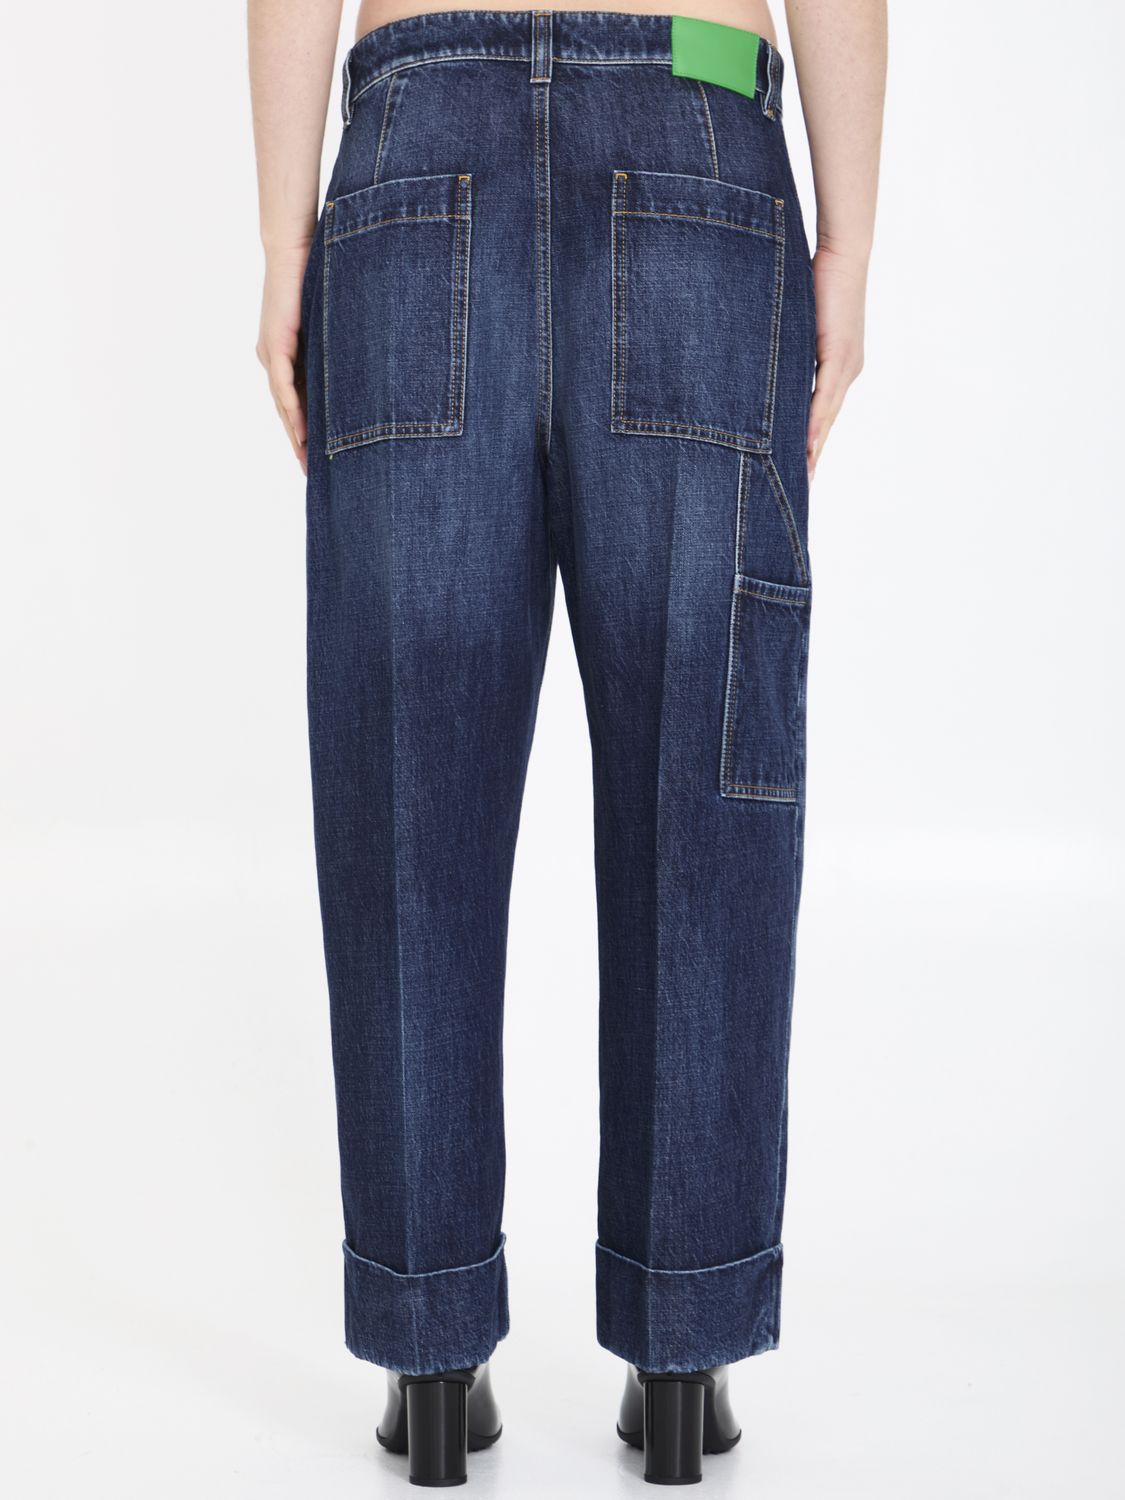 Quần jeans cargo màu xanh nhạt cho phụ nữ